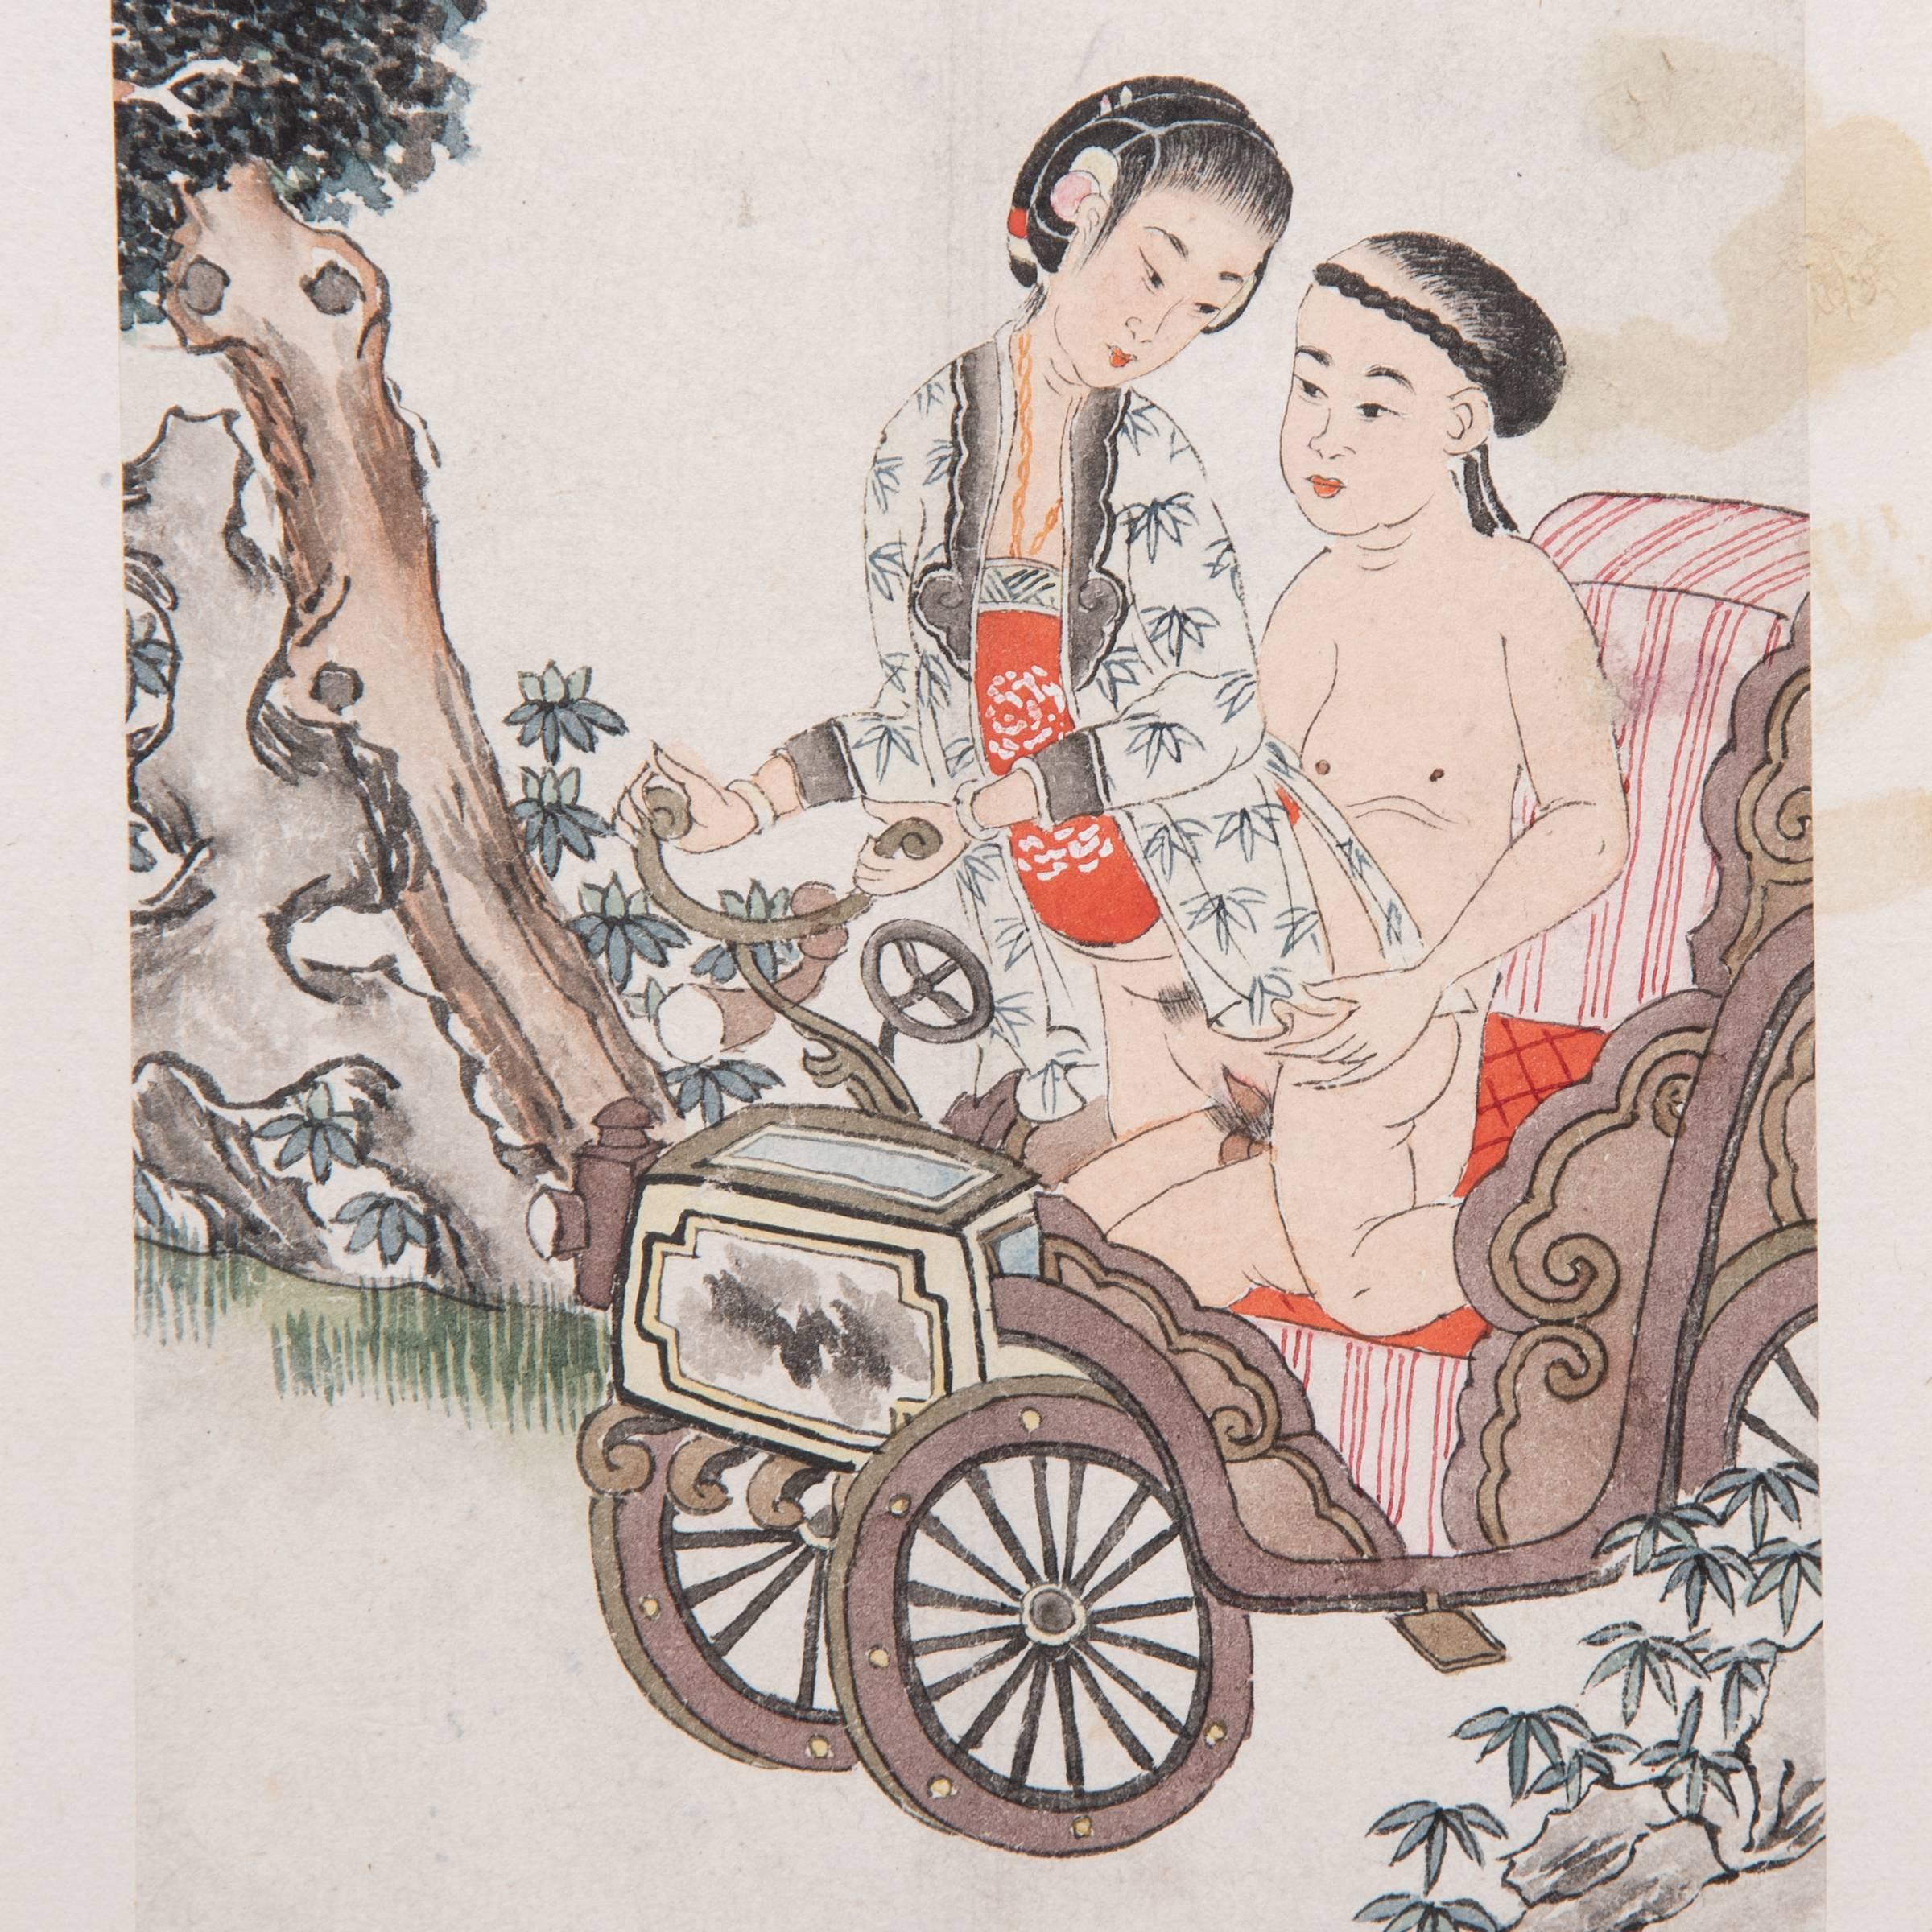 Trotz ihres expliziten Inhalts vermittelt diese intime Szene ein Gefühl der Zärtlichkeit und romantischen Liebe, das für die chinesische erotische Kunst charakteristisch ist. Diese als 